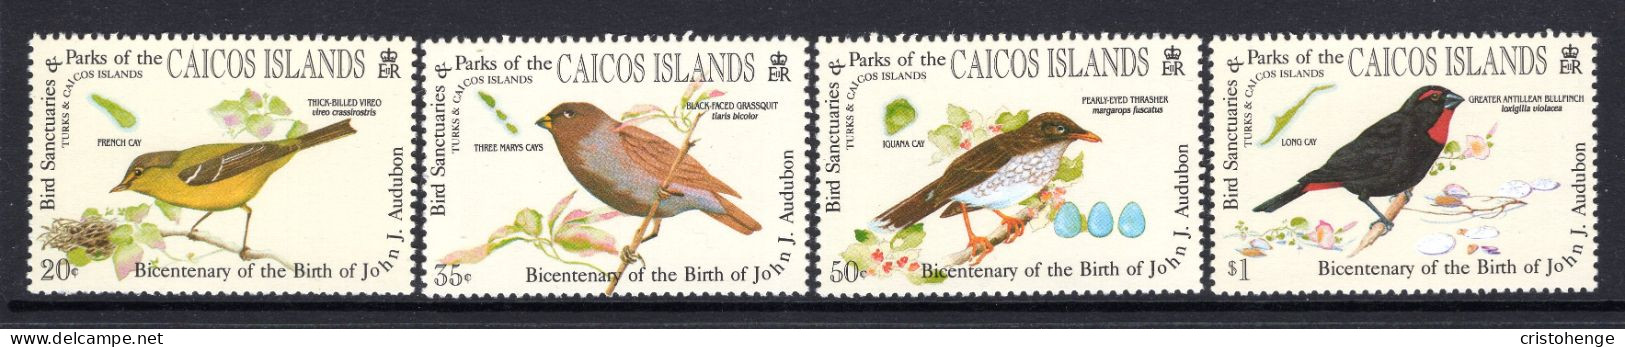 Caicos Islands 1985 Birth Centenary Of John J. Audubon Set MNH (SG 68-71) - Turks & Caicos